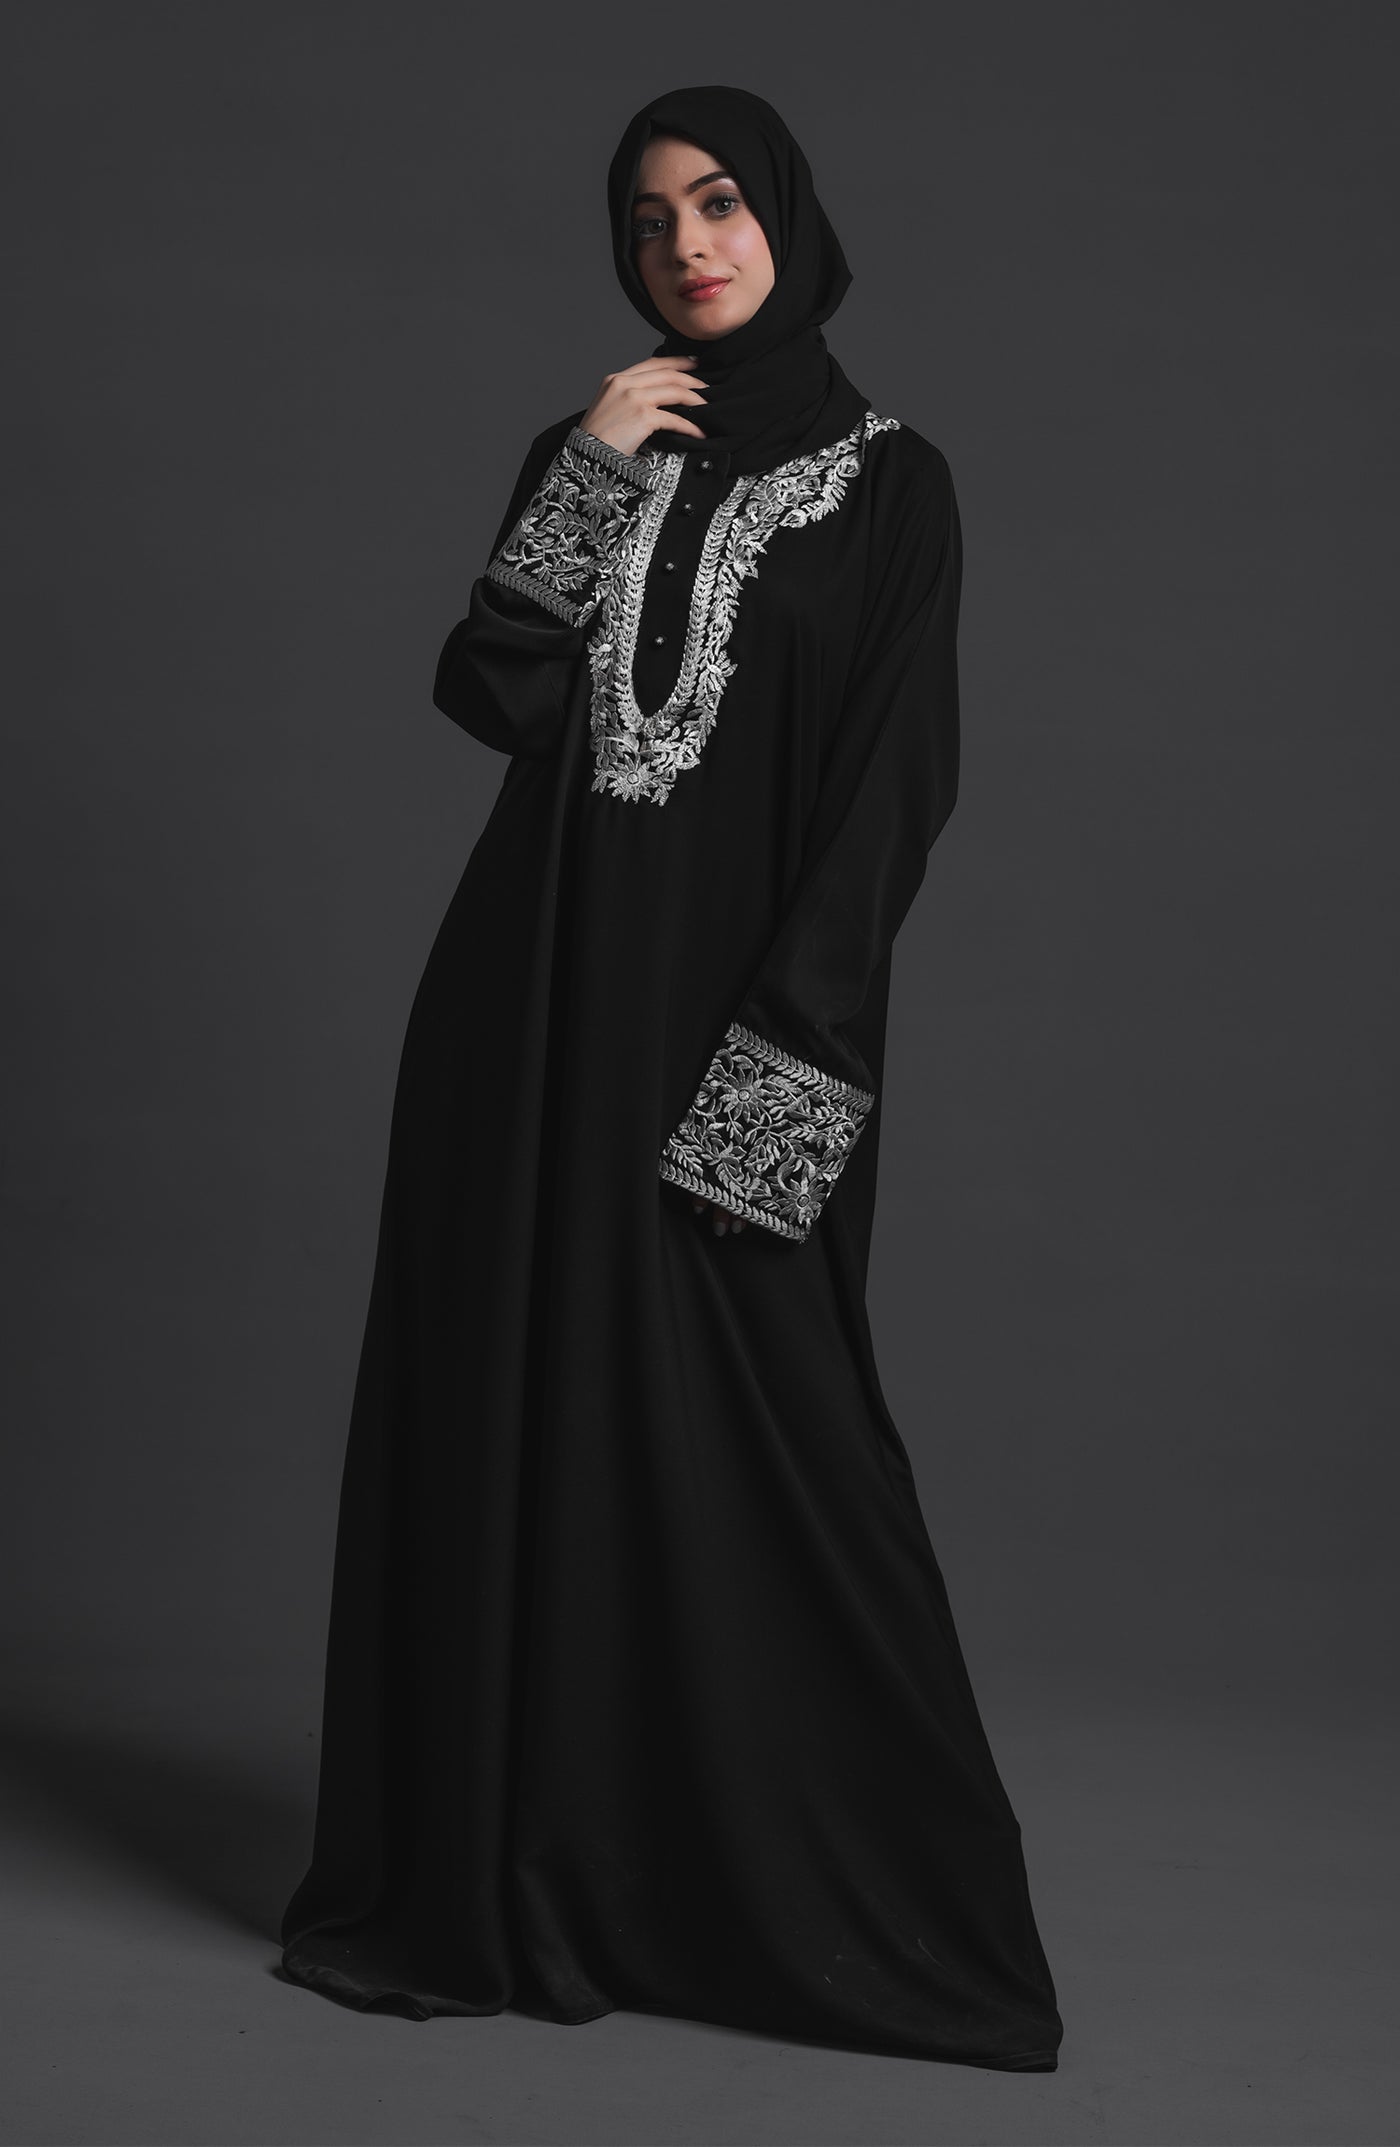 deneb black abaya in korean nida fabric